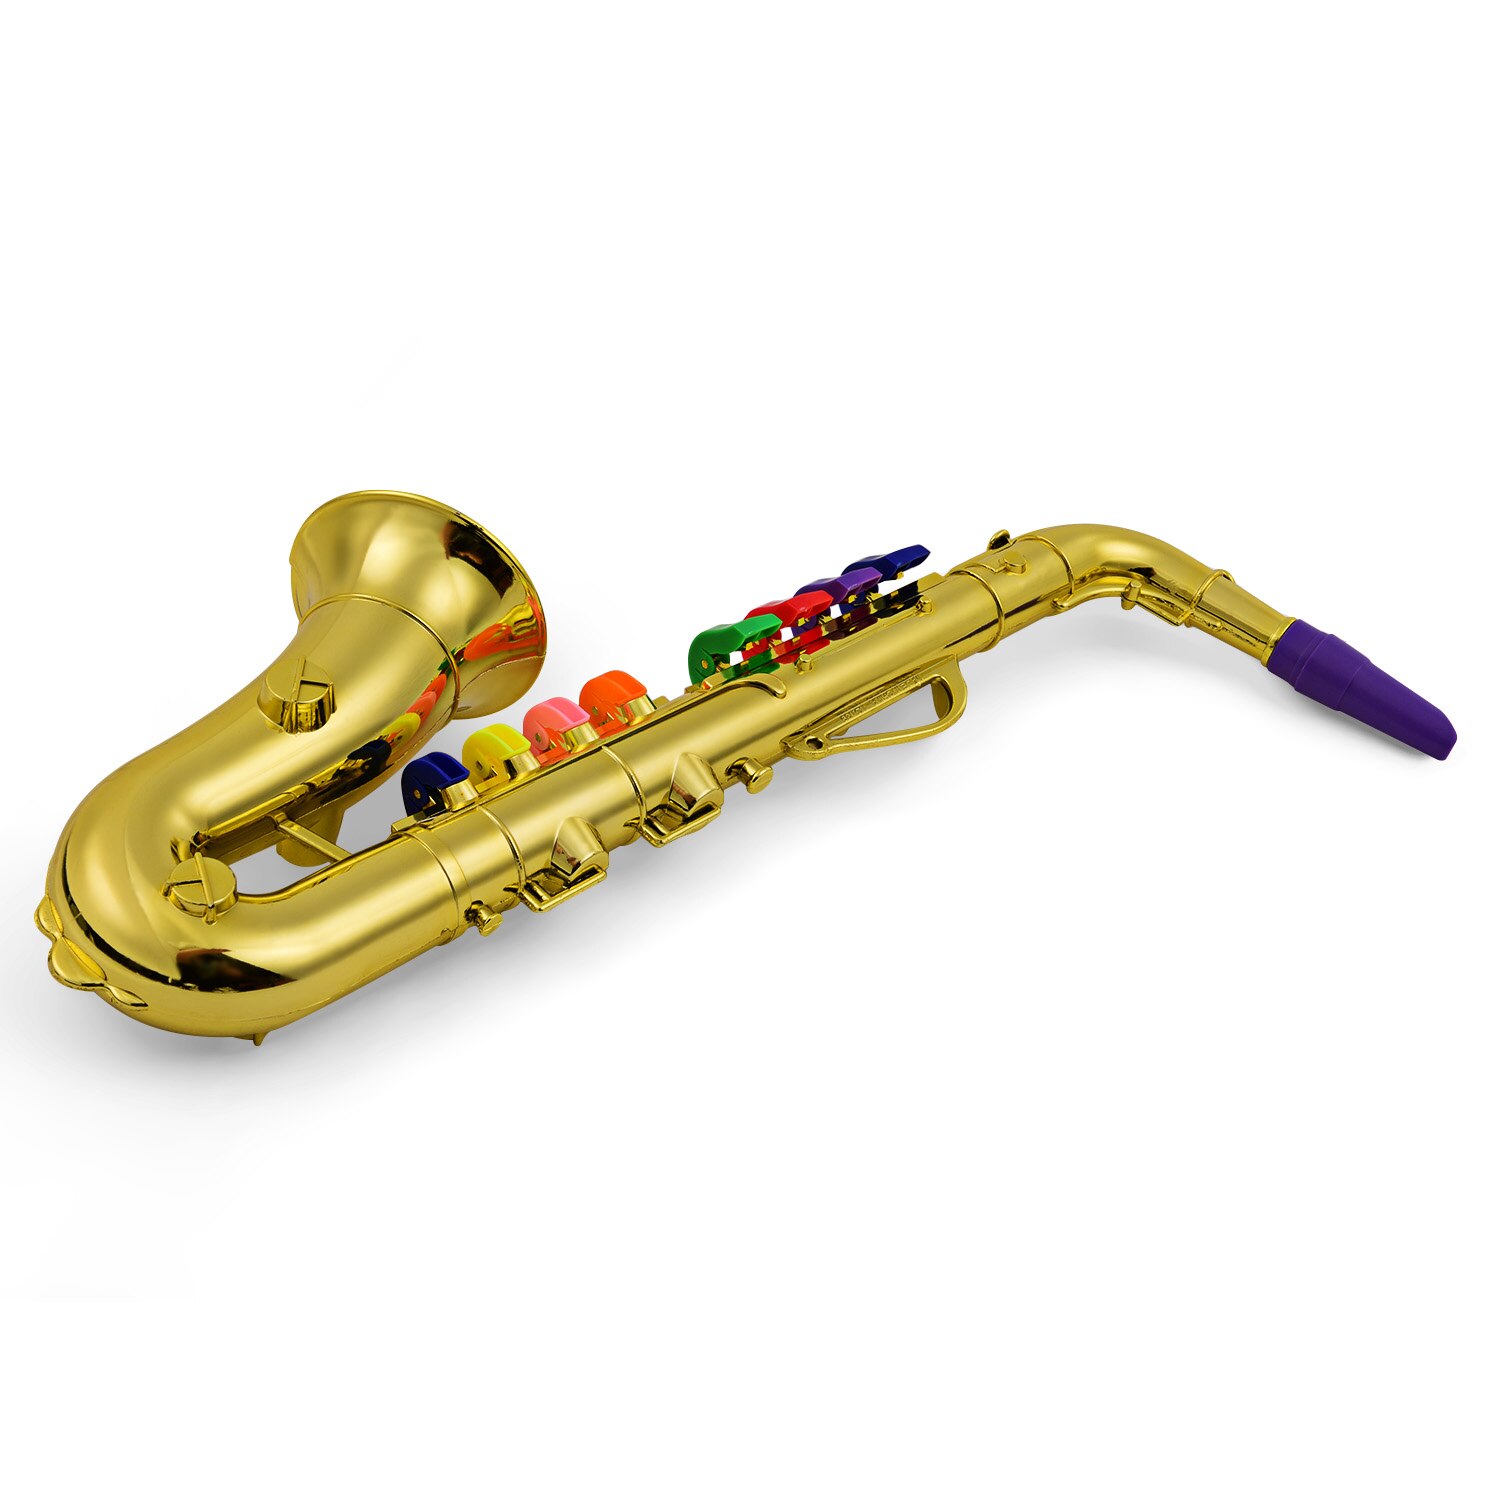 Saxofon børn abs metallisk guld saxofon med 8 farvede nøgler sax